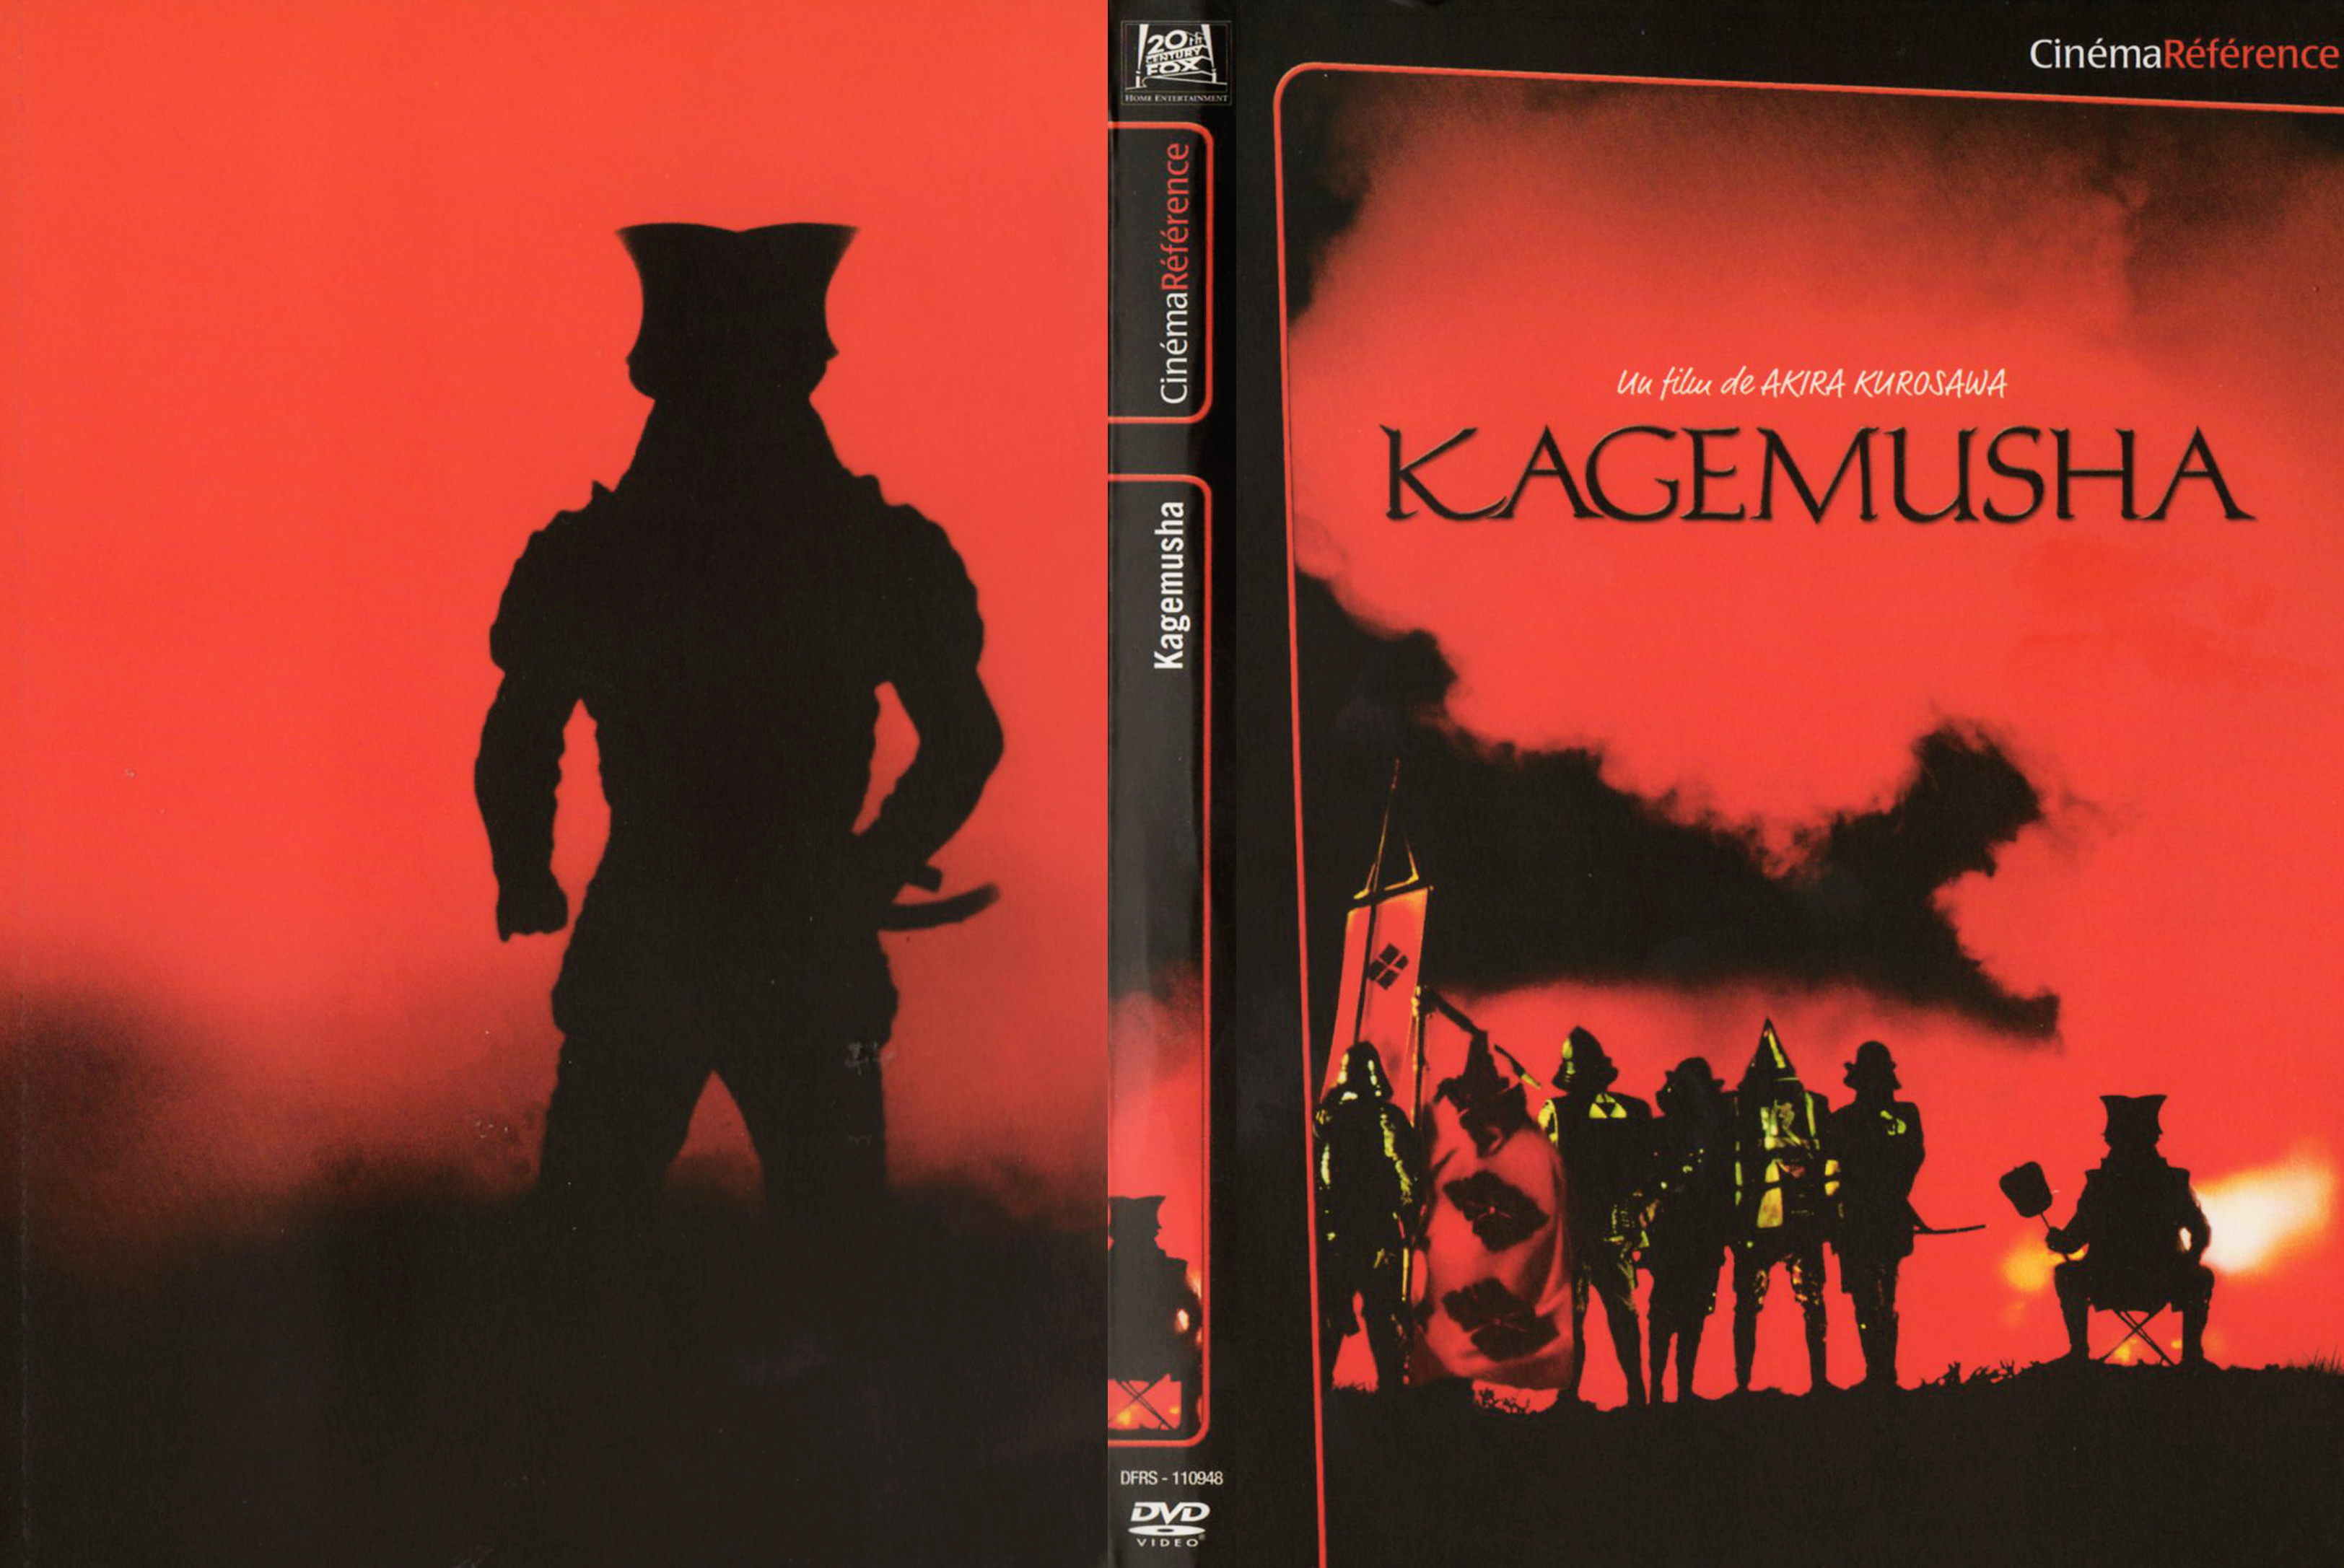 Jaquette DVD Kagemusha v2